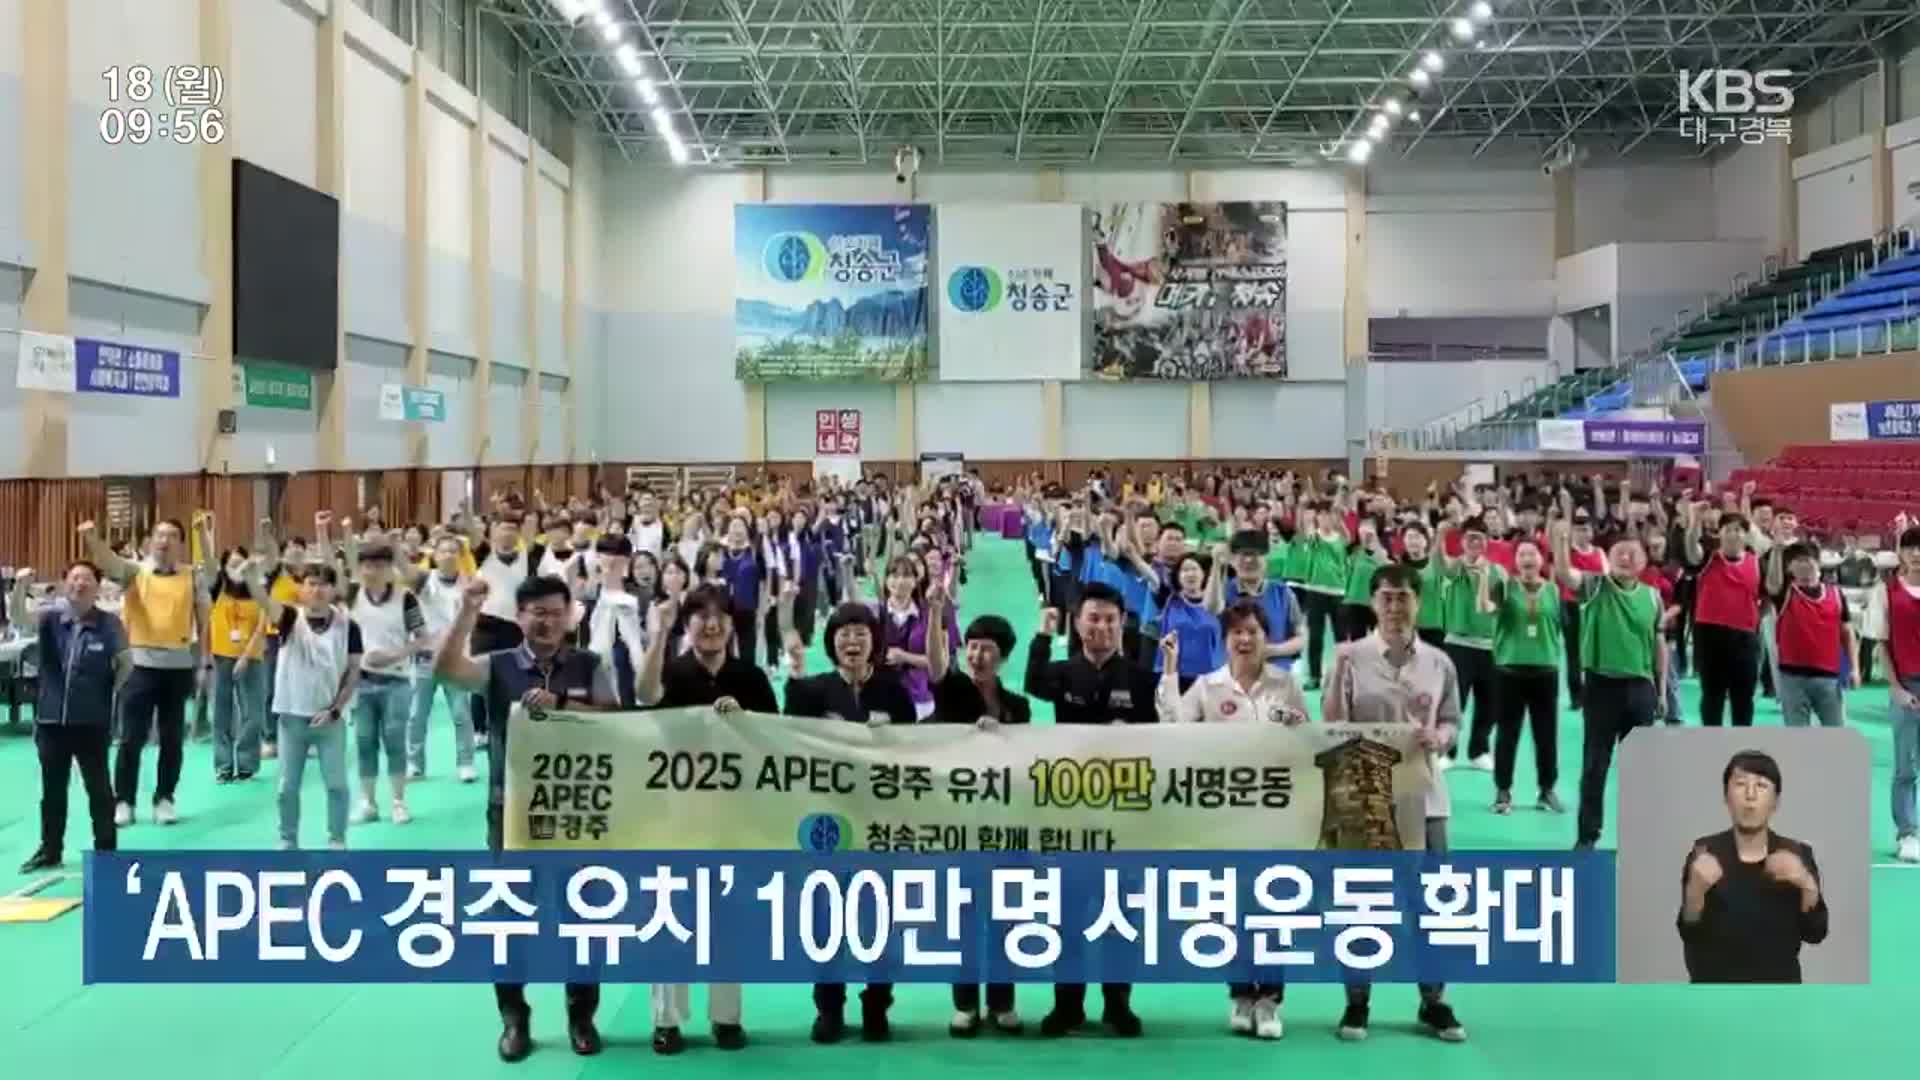 ‘APEC 경주 유치’ 100만 명 서명운동 확대